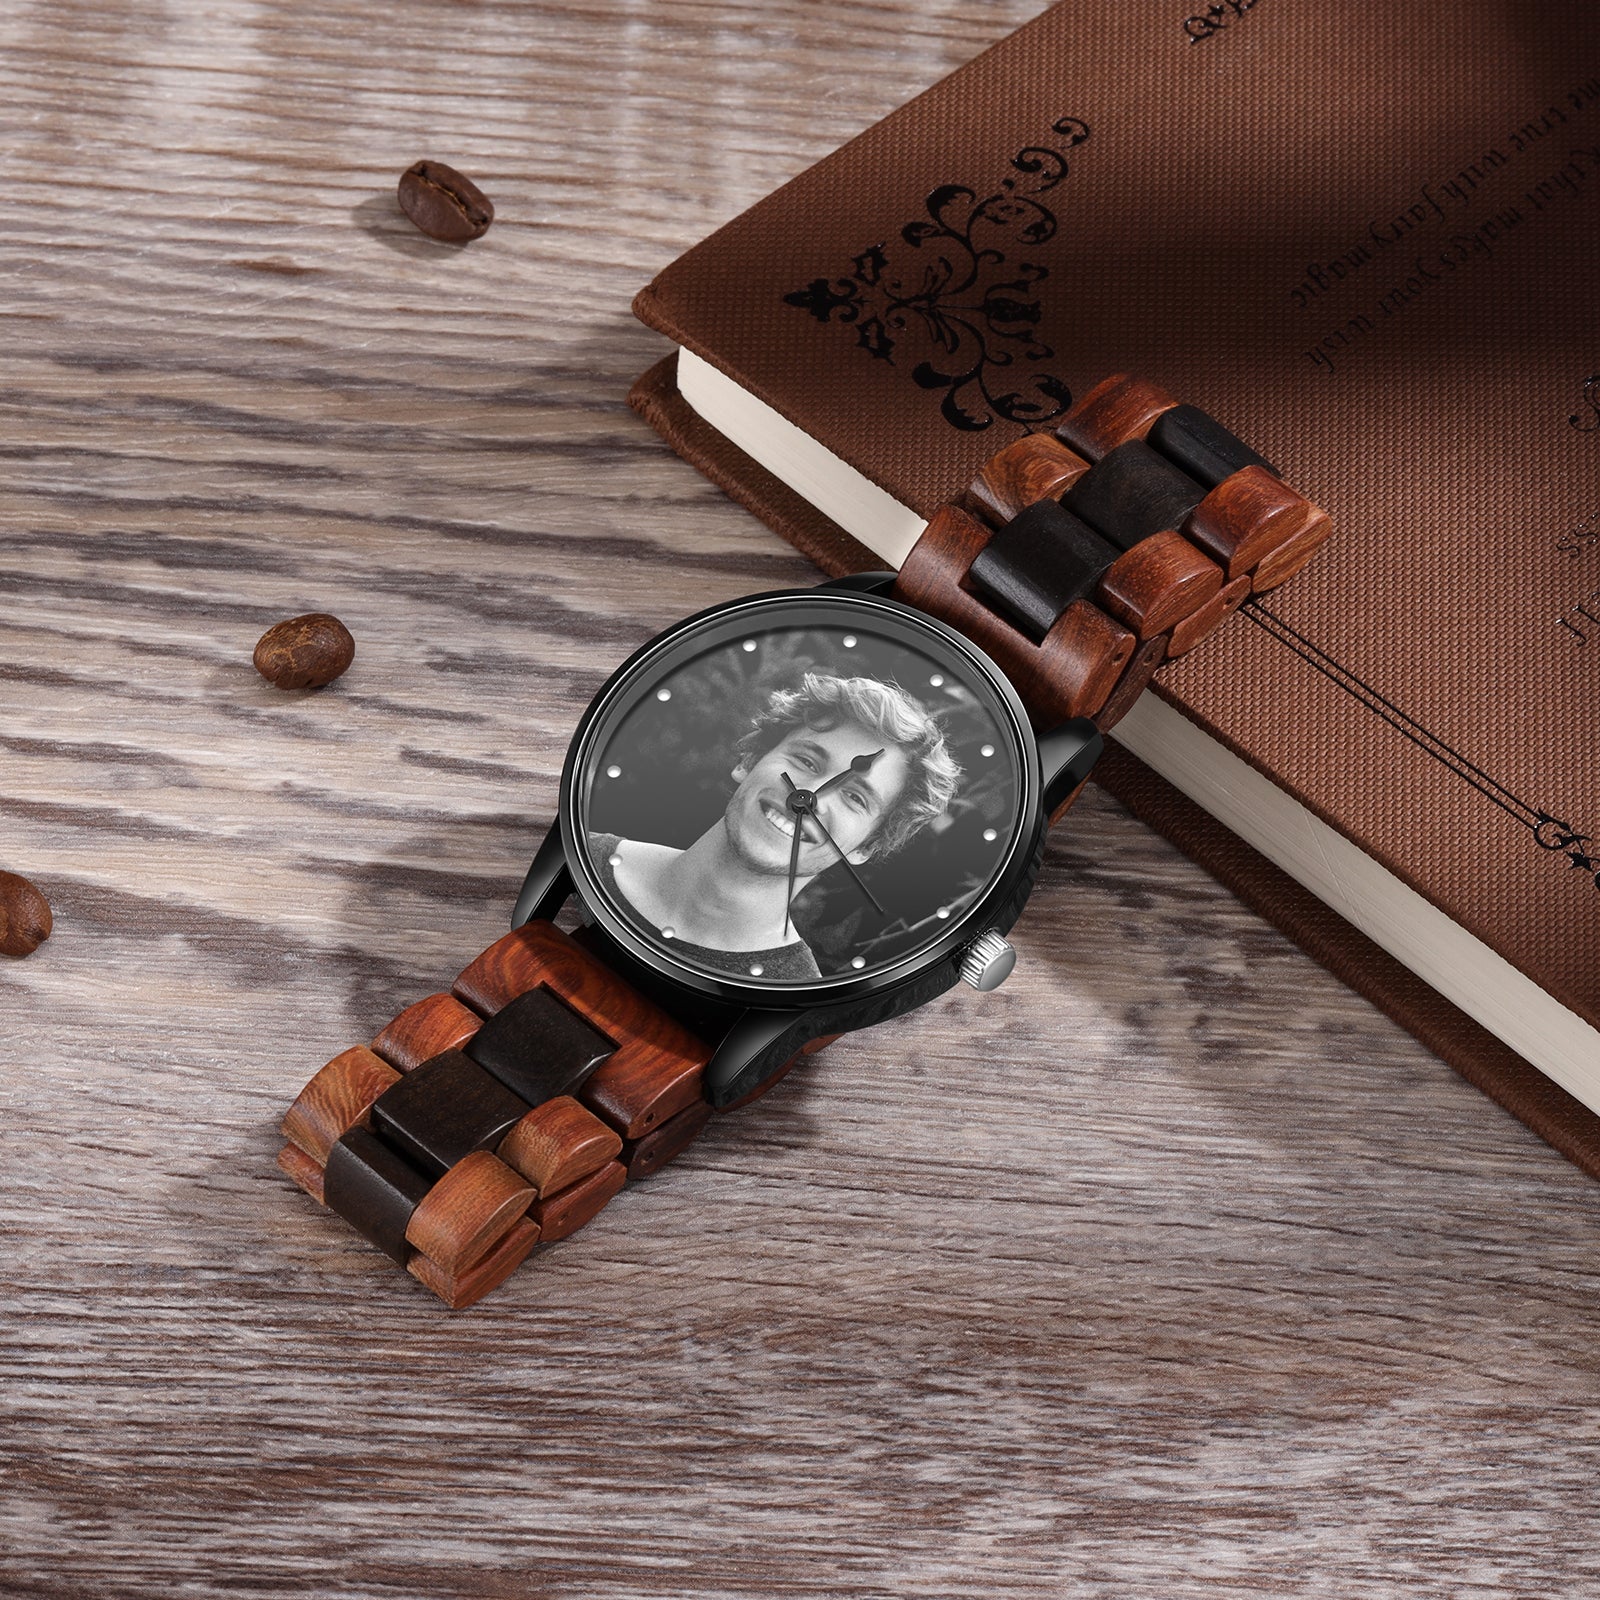 Personalized Photo Watch Wooden Wristband